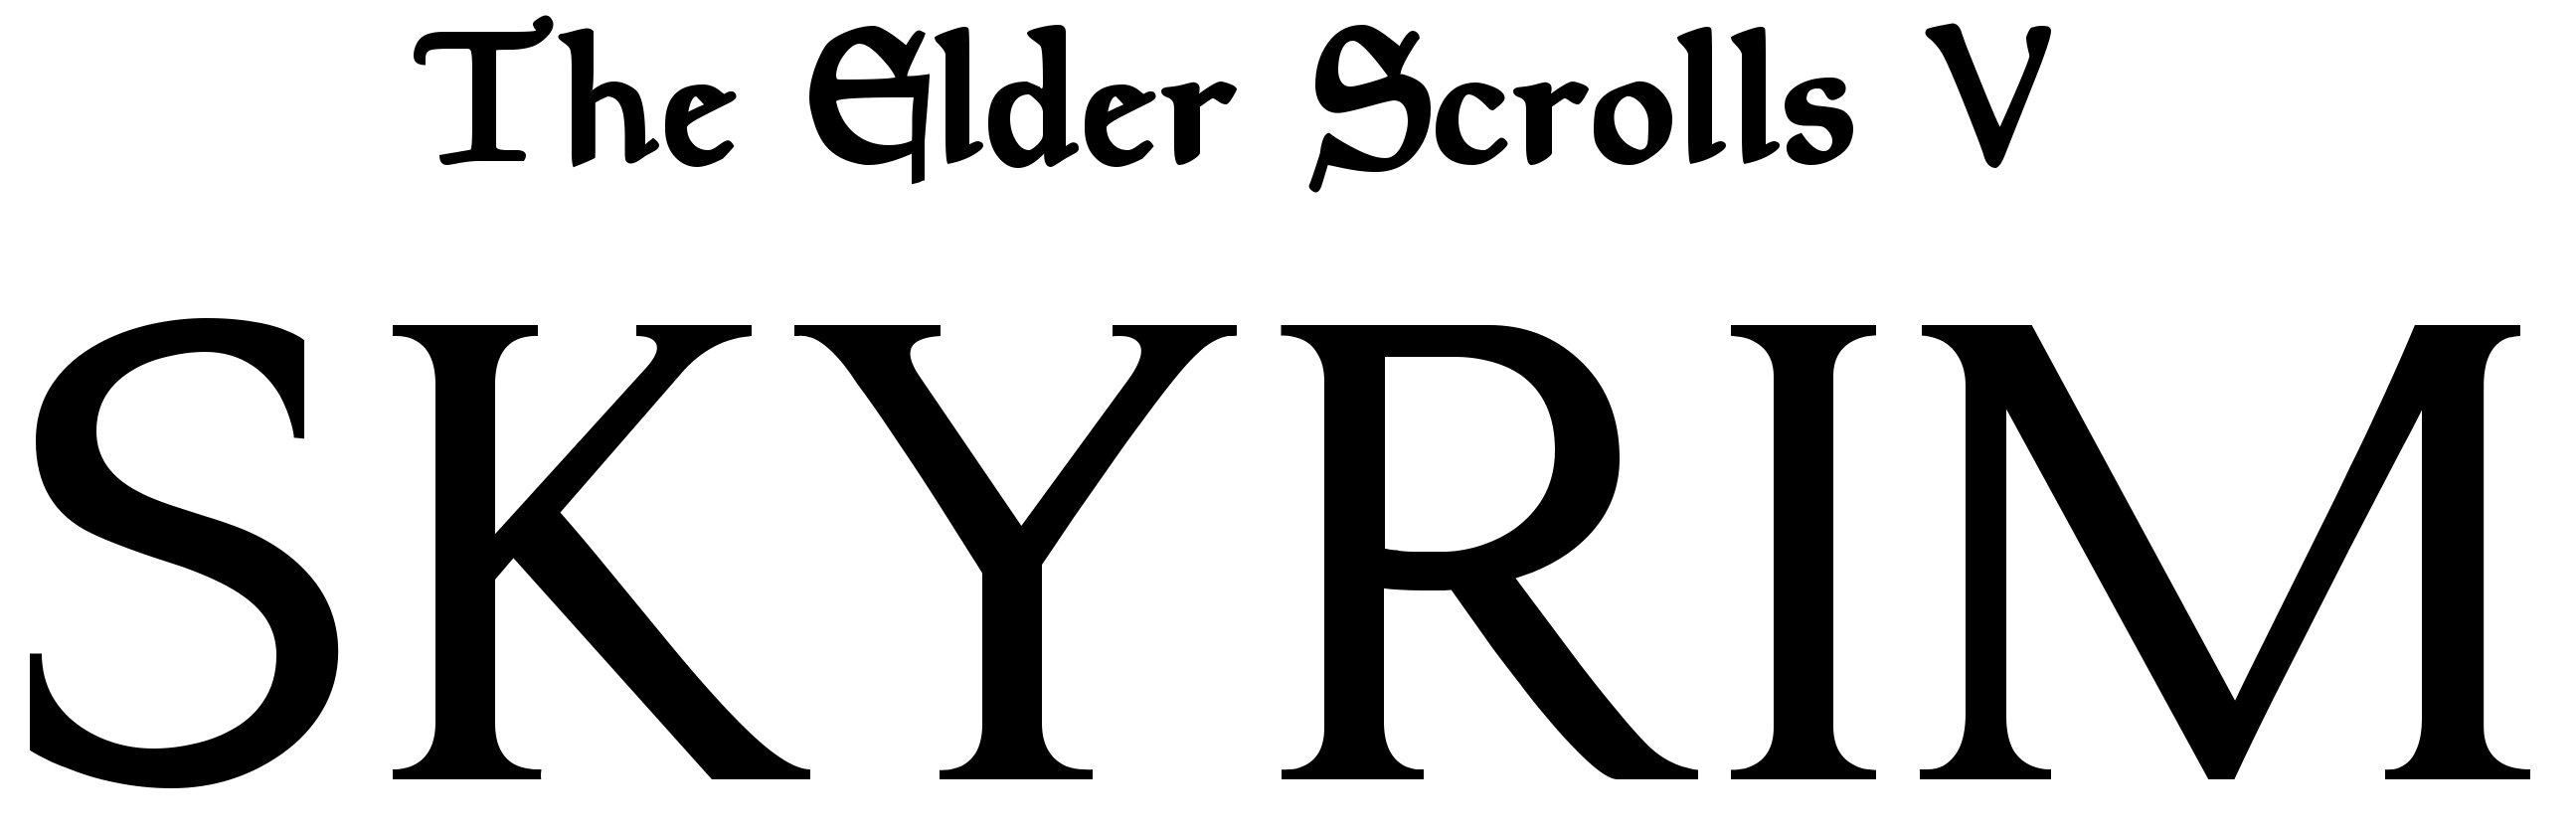 The Elder Scrolls V Skyrim Logo PNG Image